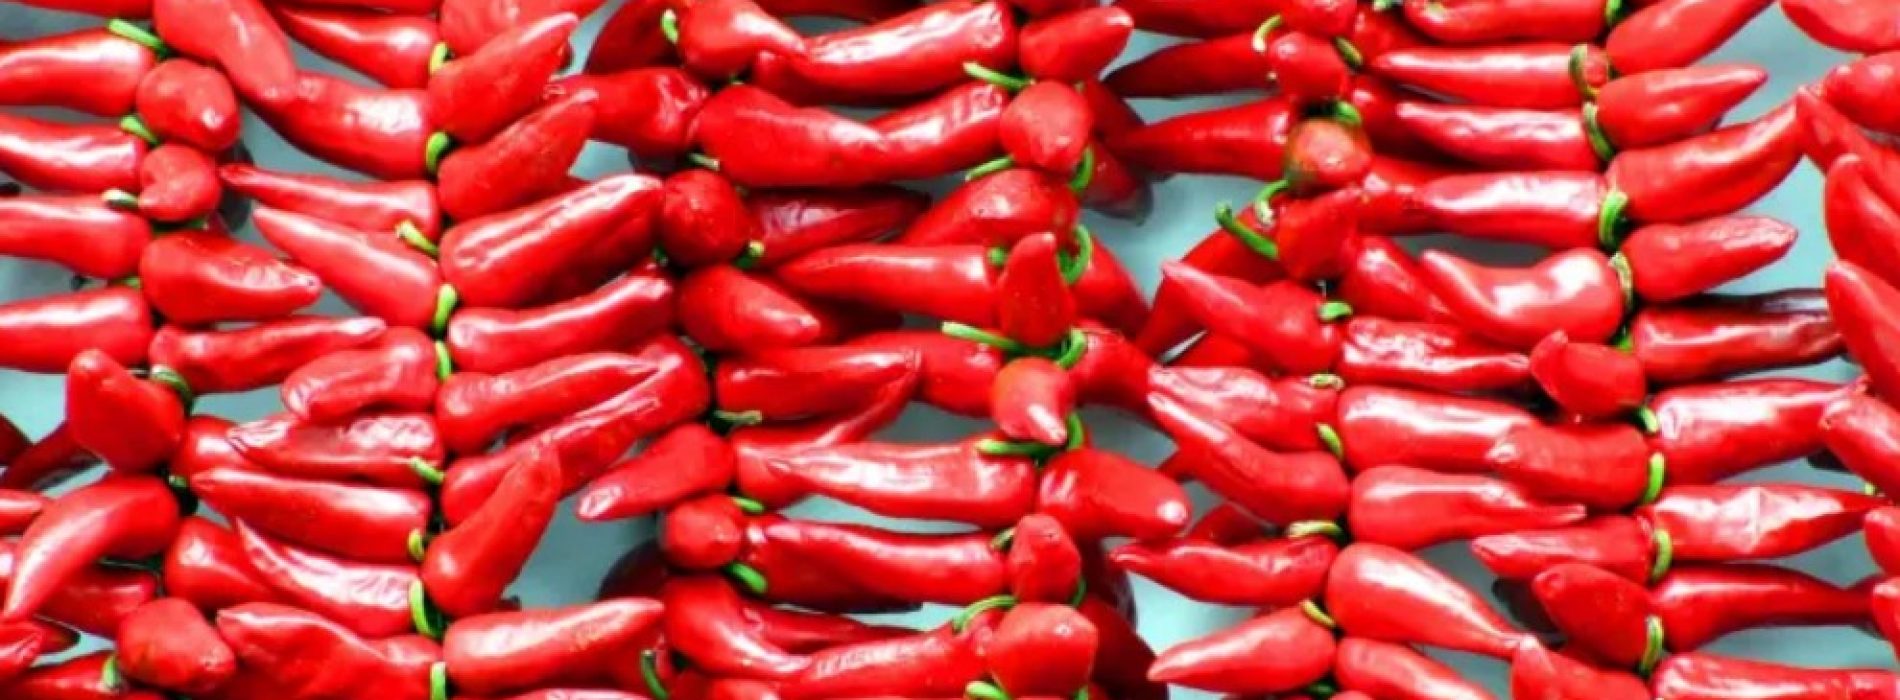 Chilipepers: van het bestrijden van kanker tot het voorkomen van hartziekten, hier zijn 6 gezondheidsvoordelen van deze pittige favoriet